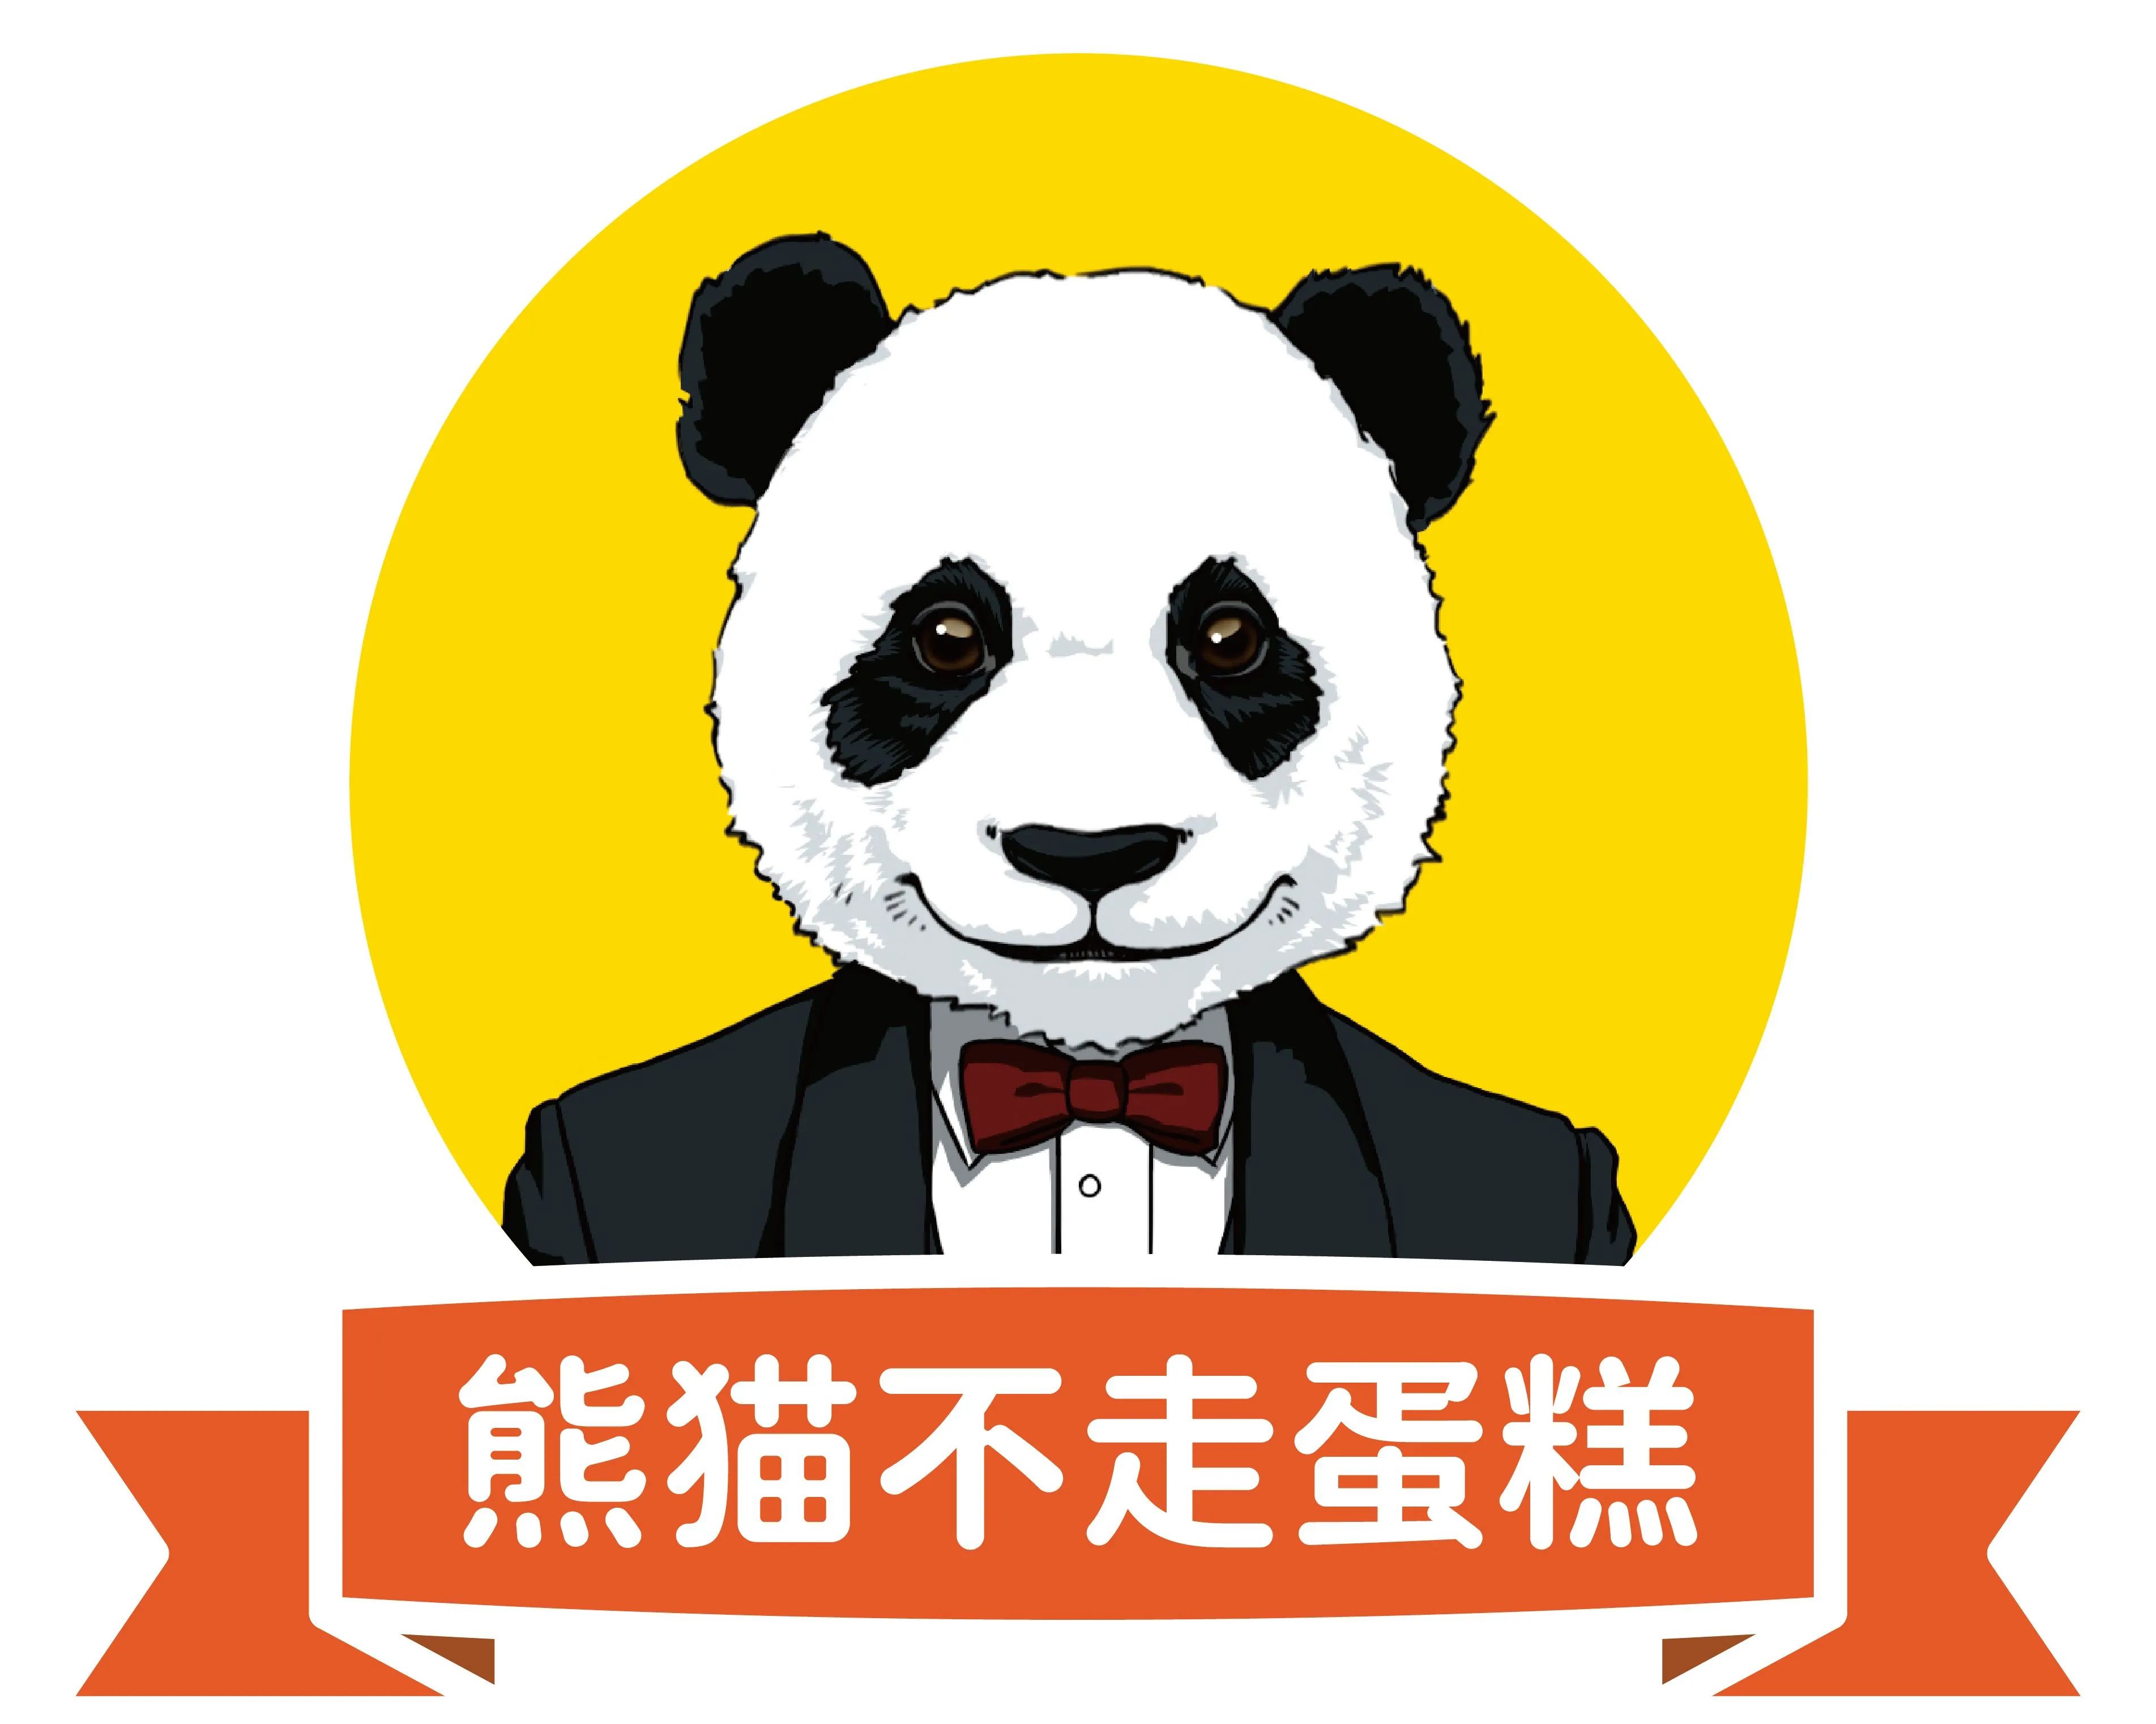 熊猫不走logo图片